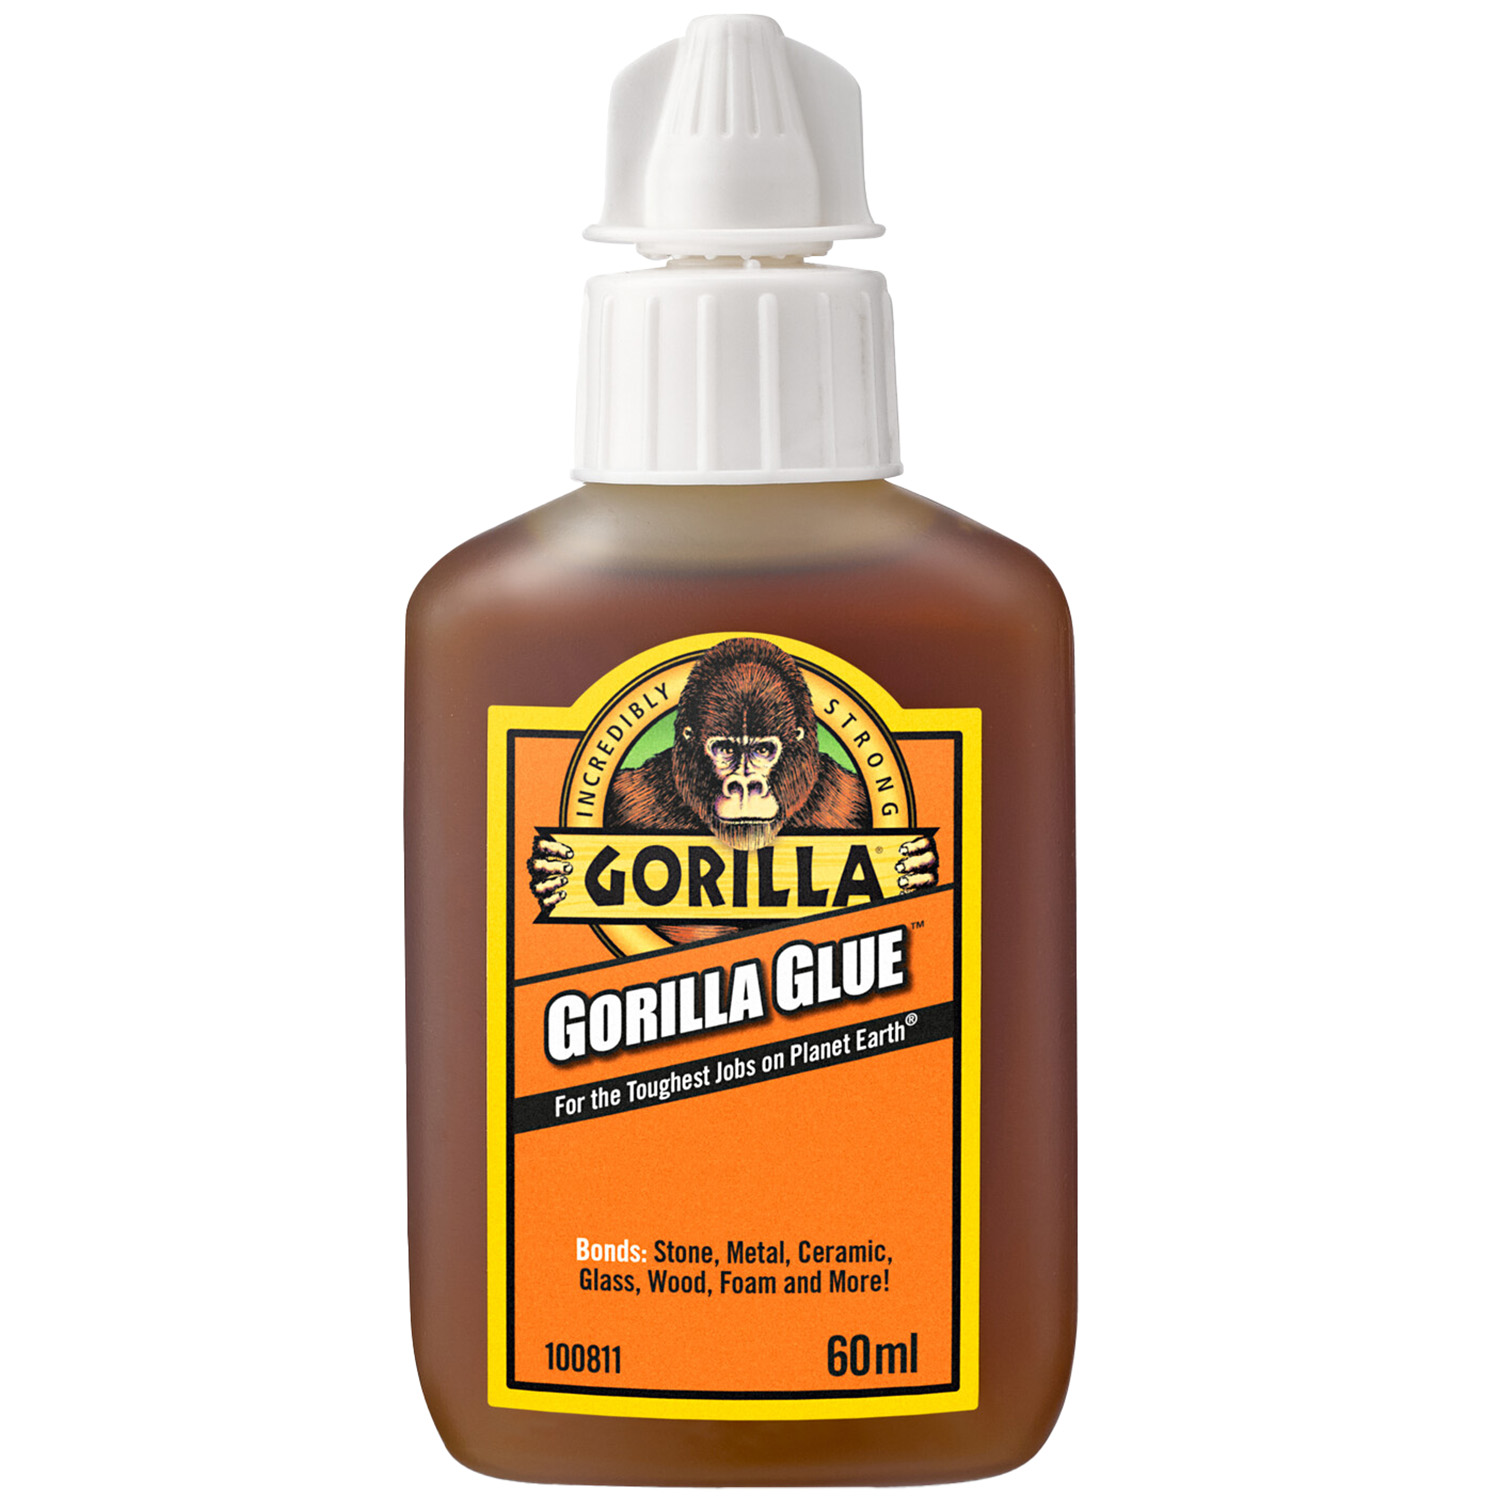 Gorilla Glue 60ml Image 1